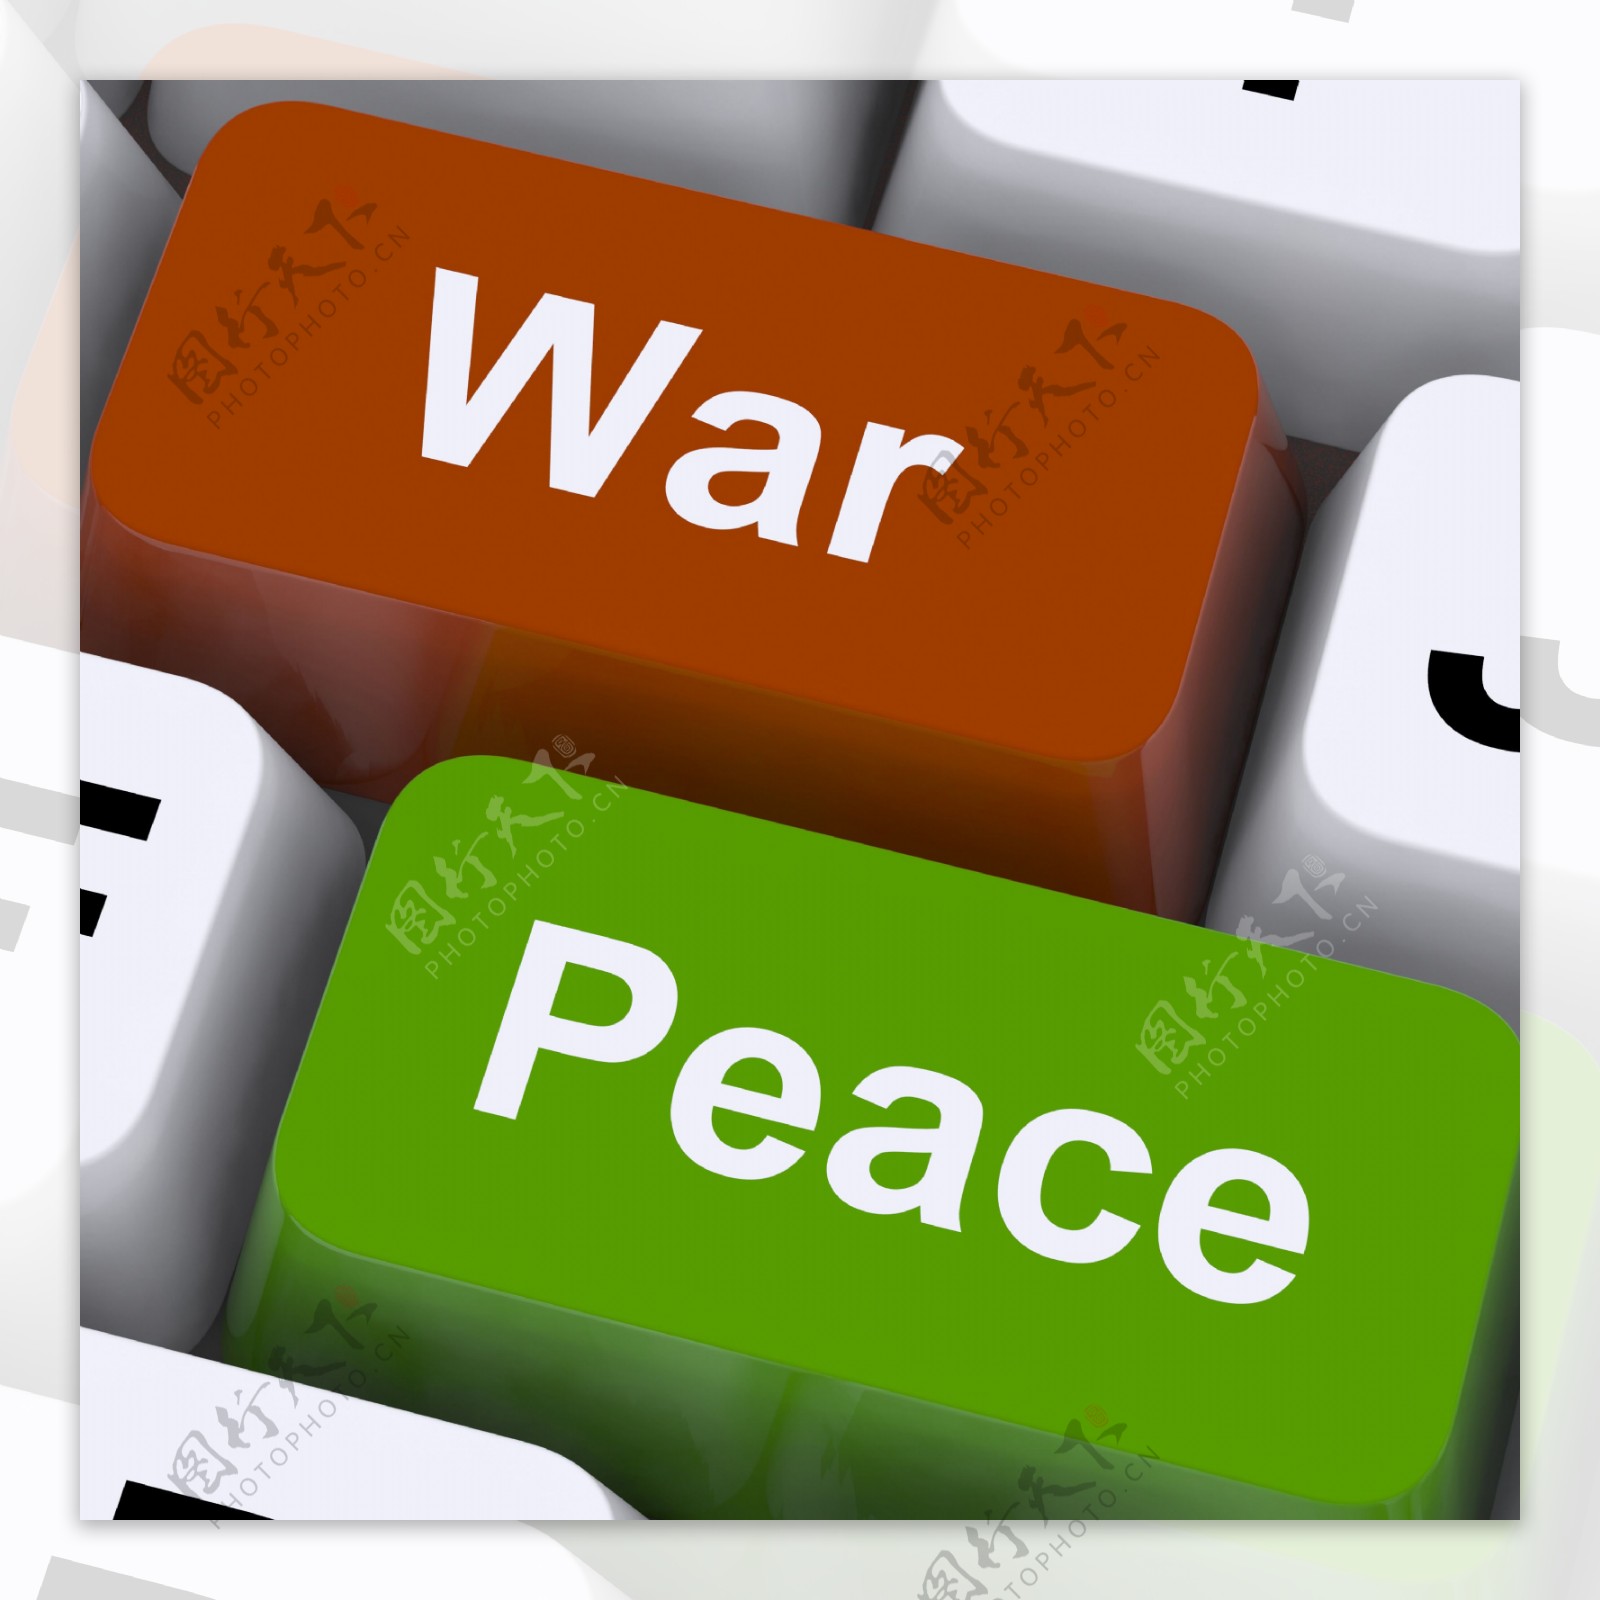 战争和平键显示没有冲突或侵略